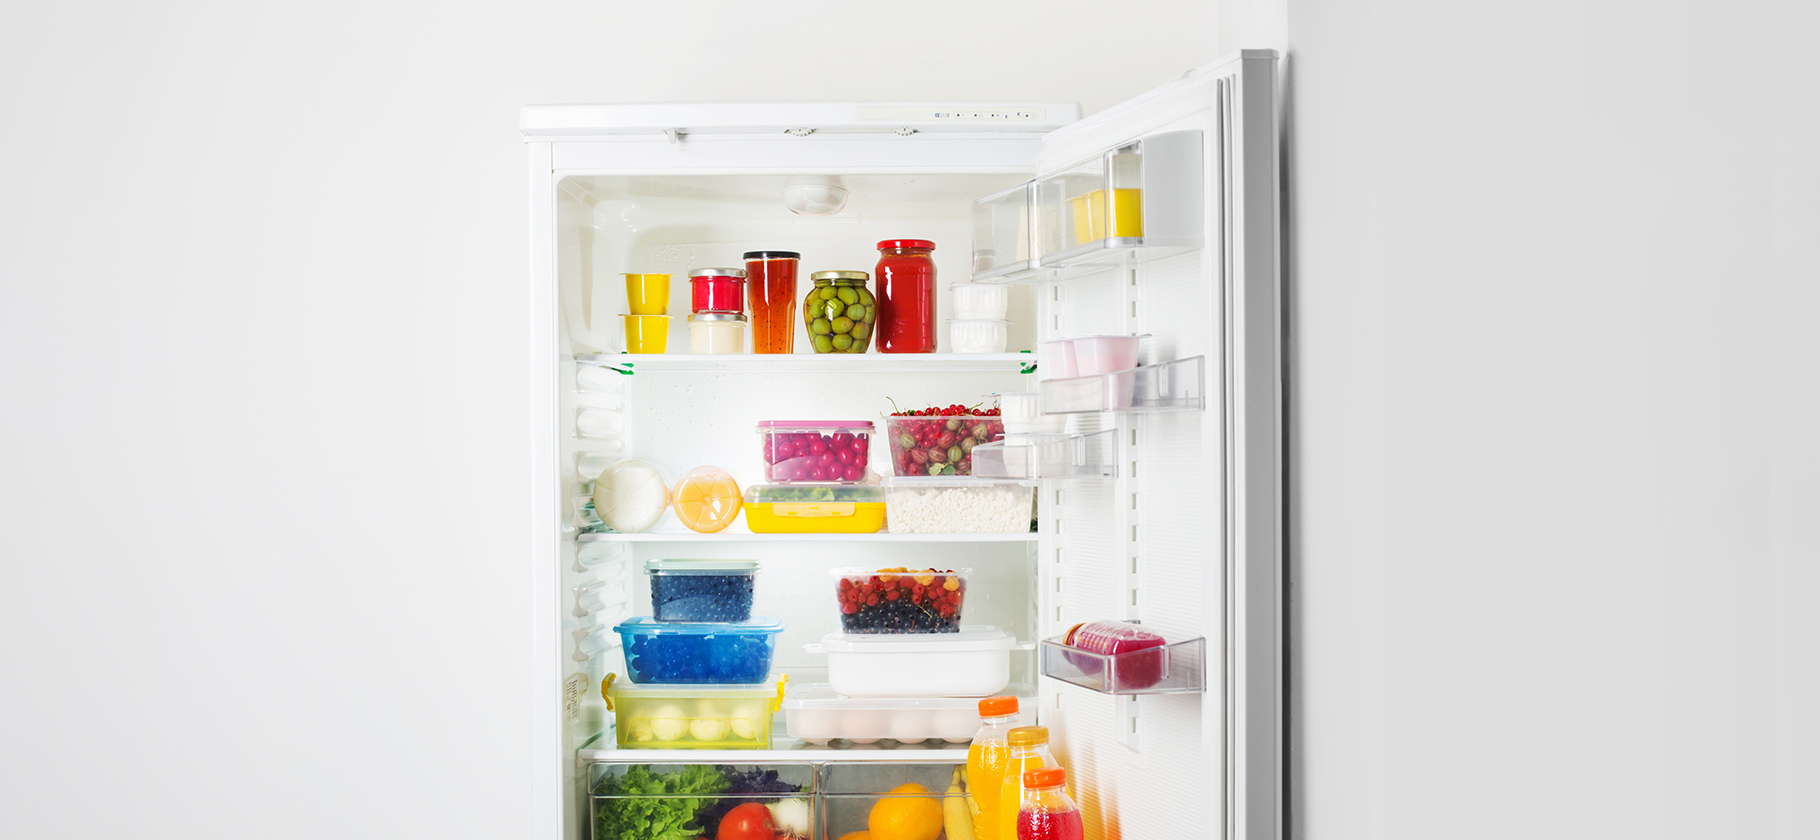 «Яйца нужно хранить на полке дверцы» и еще 6 мифов о хранении в холодильнике